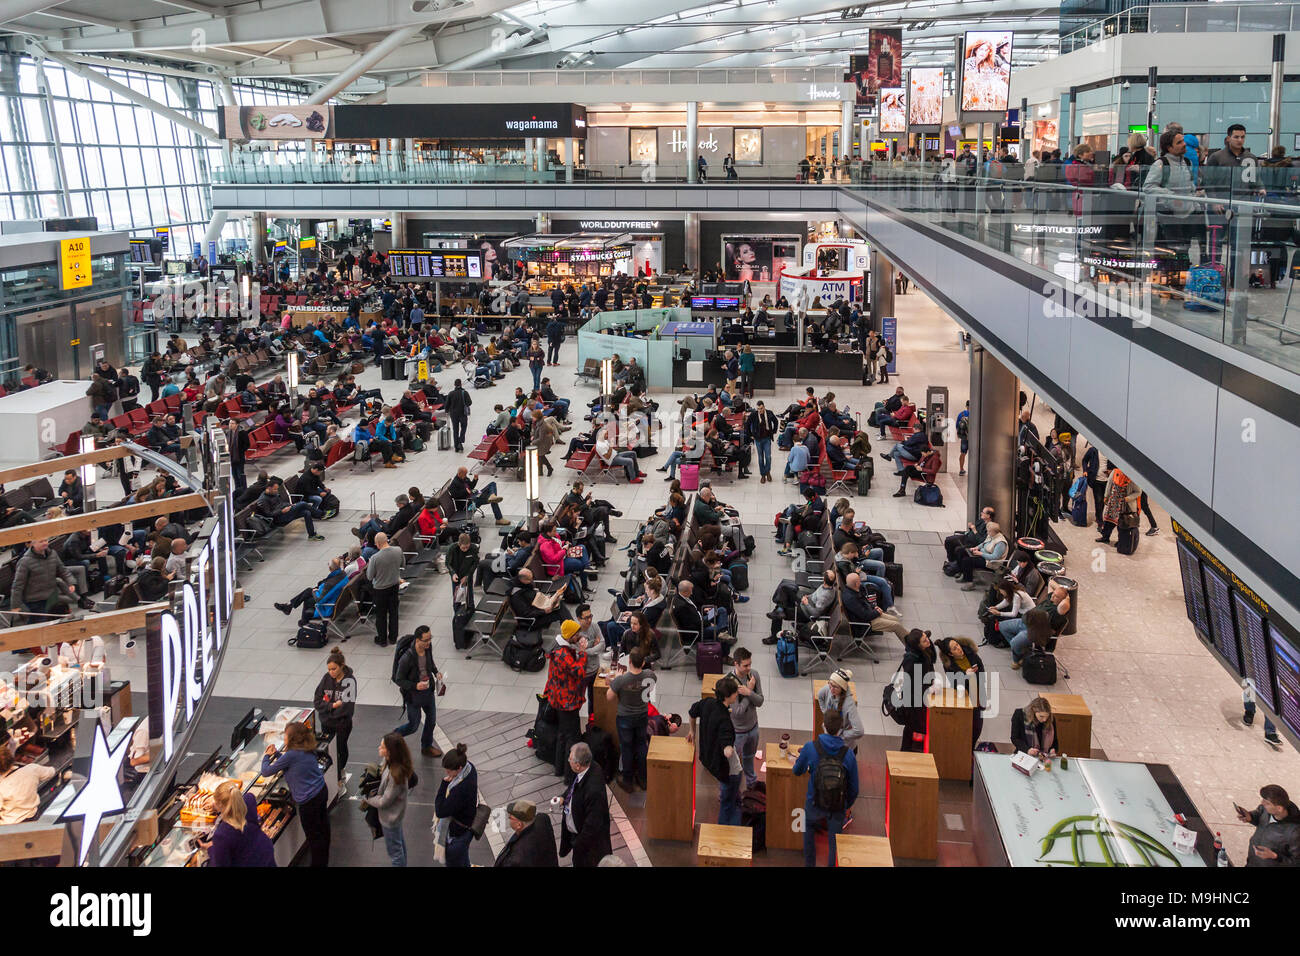 Les passagers qui attendent pour les vols à l'aéroport d'Heathrow, Terminal 5, manger, boire du café, assis. Magasins d'alimentation au détail et tout autour. Banque D'Images